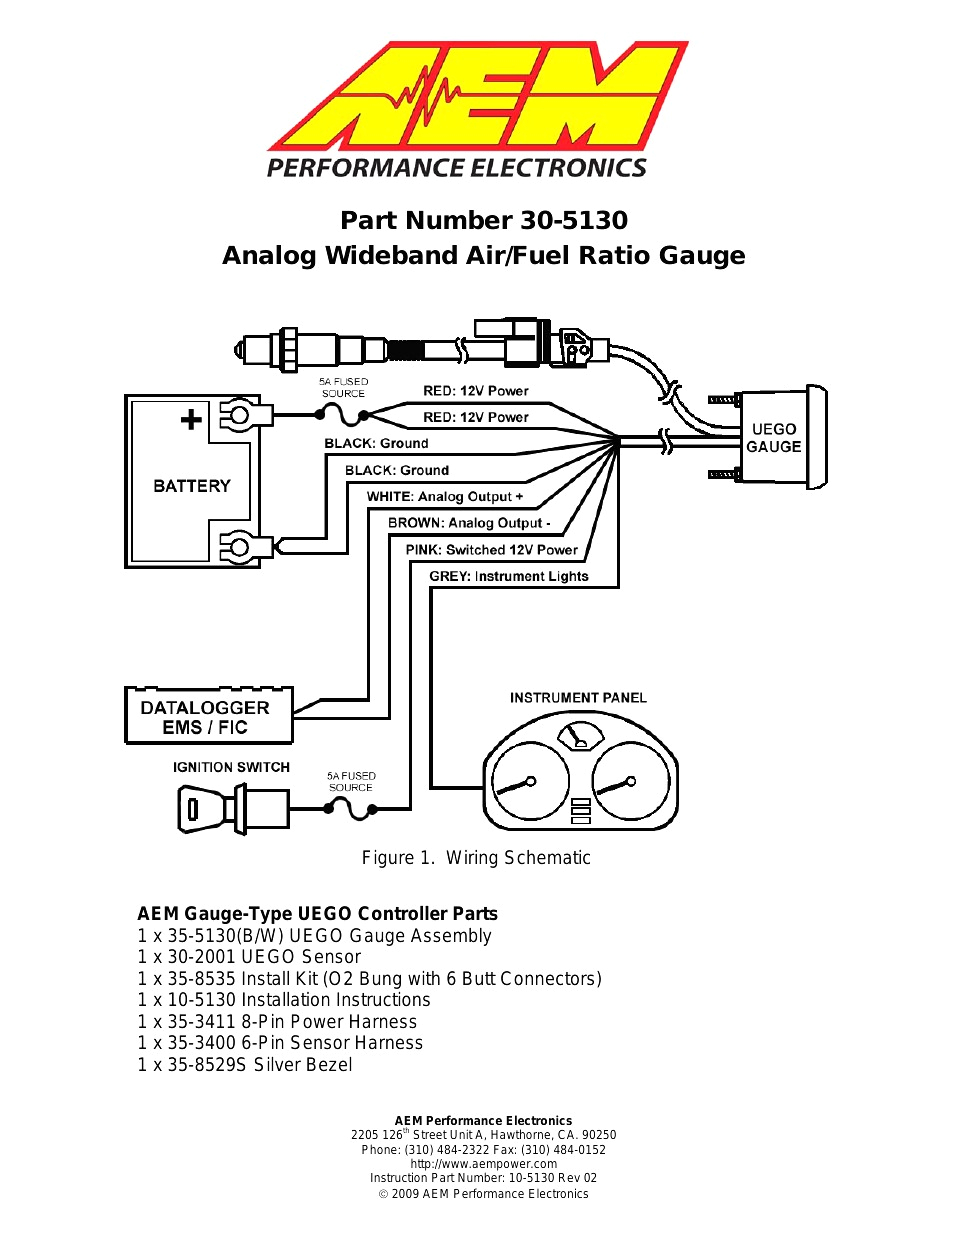 tps wiring diagram 2003 rav4 wiring diagram structuretps wiring diagram 2003 rav4 wiring library air fuel